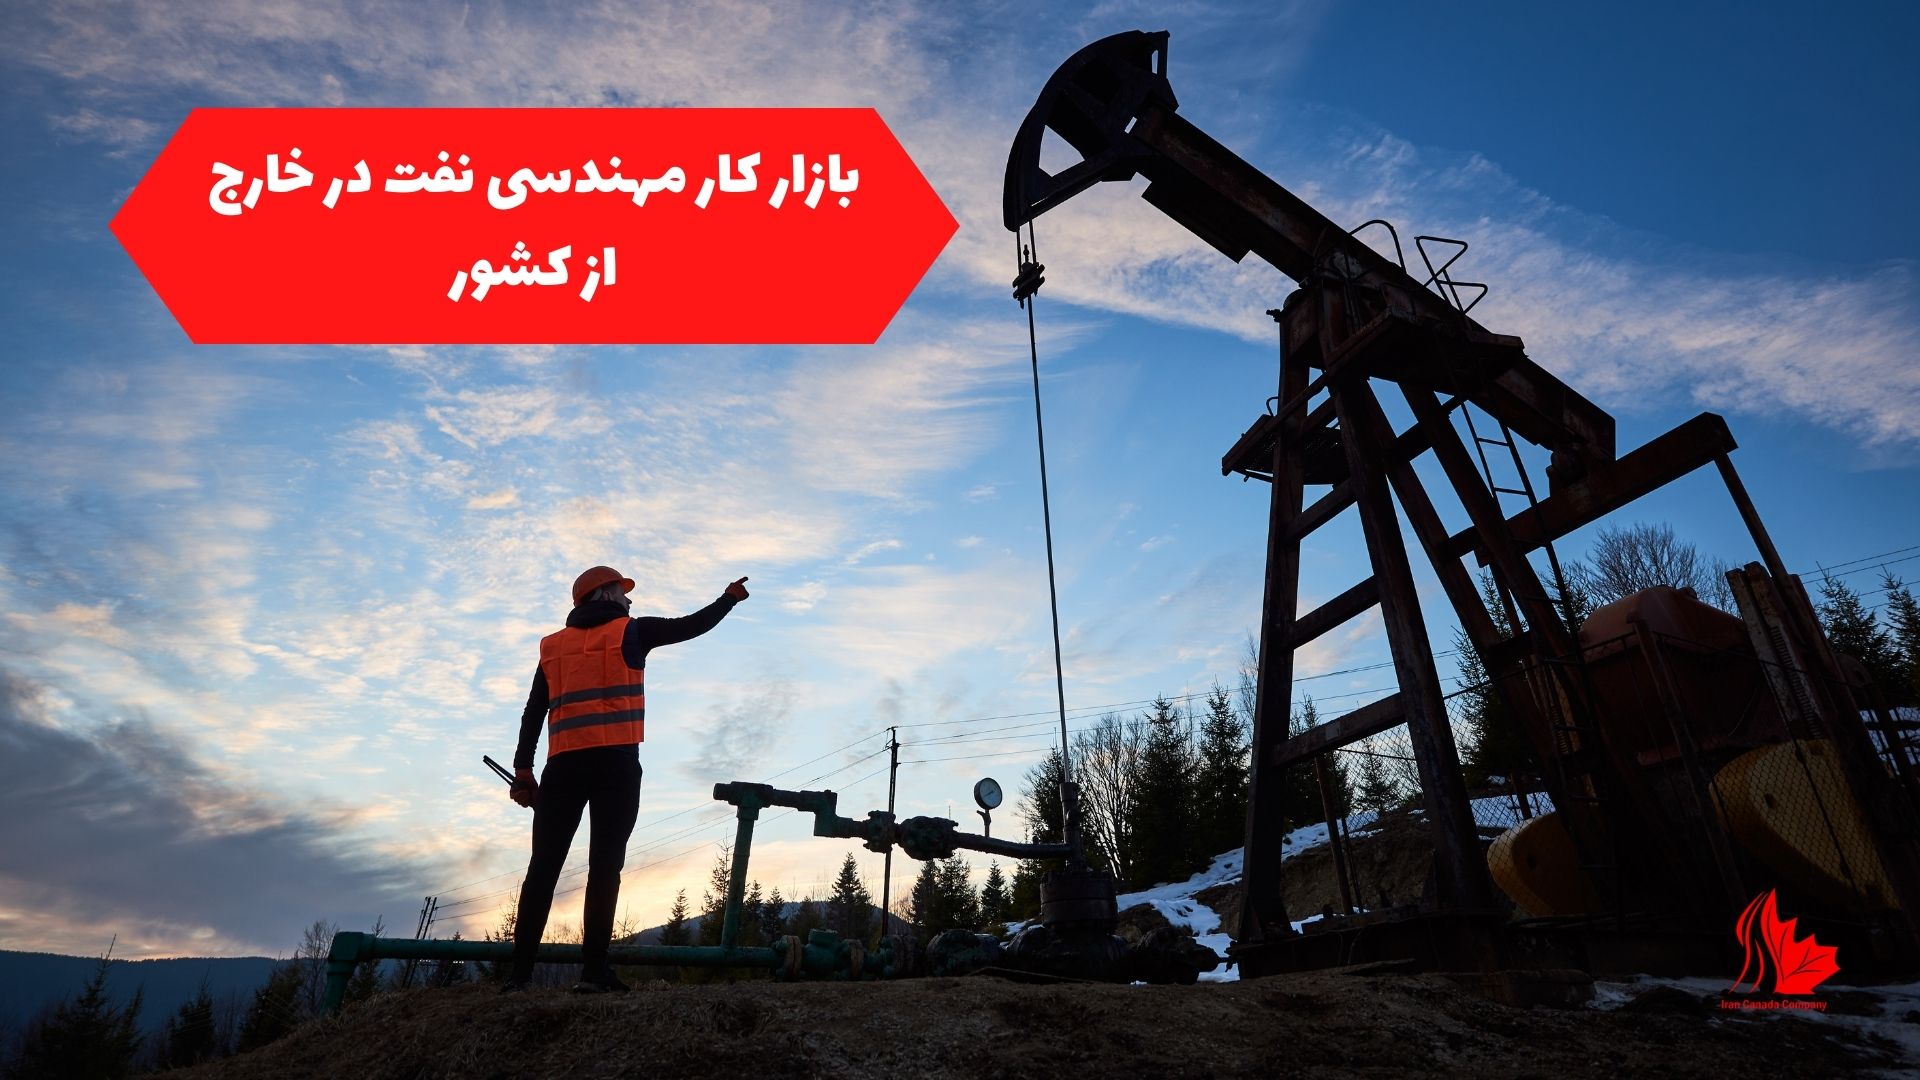 بازار کار مهندسی نفت در خارج از کشور